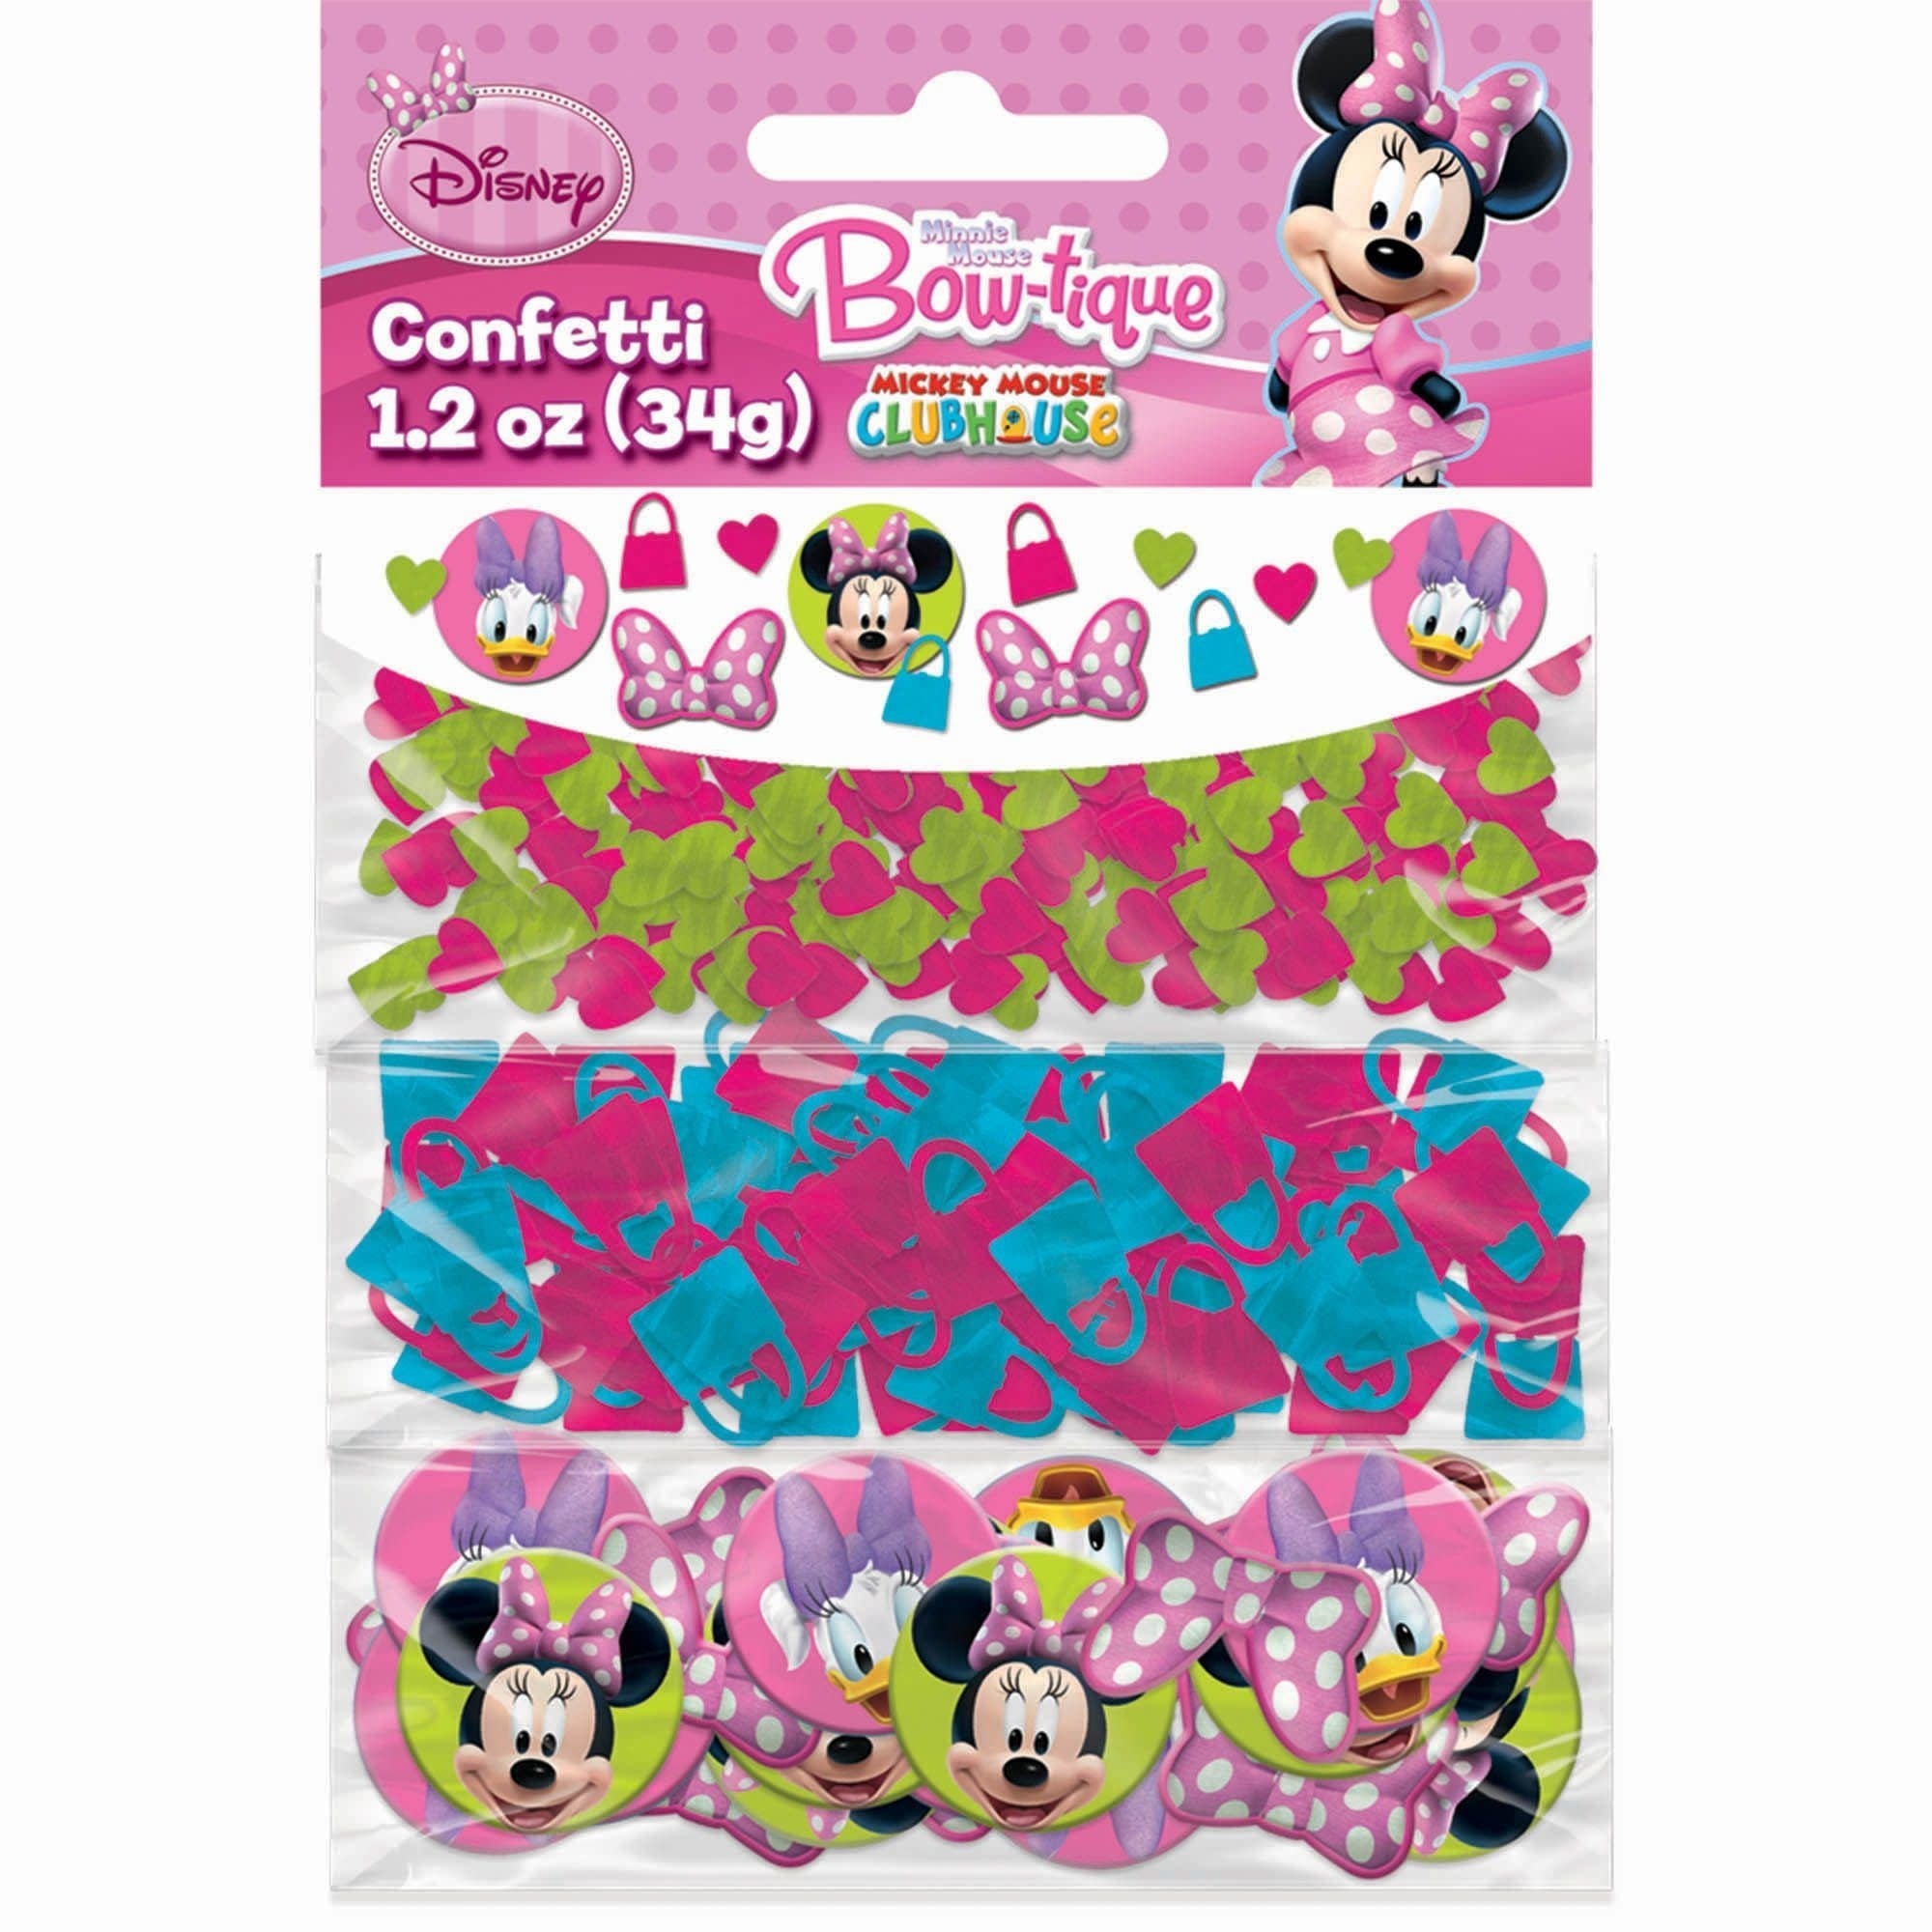 Confettis 1.2 Oz - Minnie MouseParty Shop